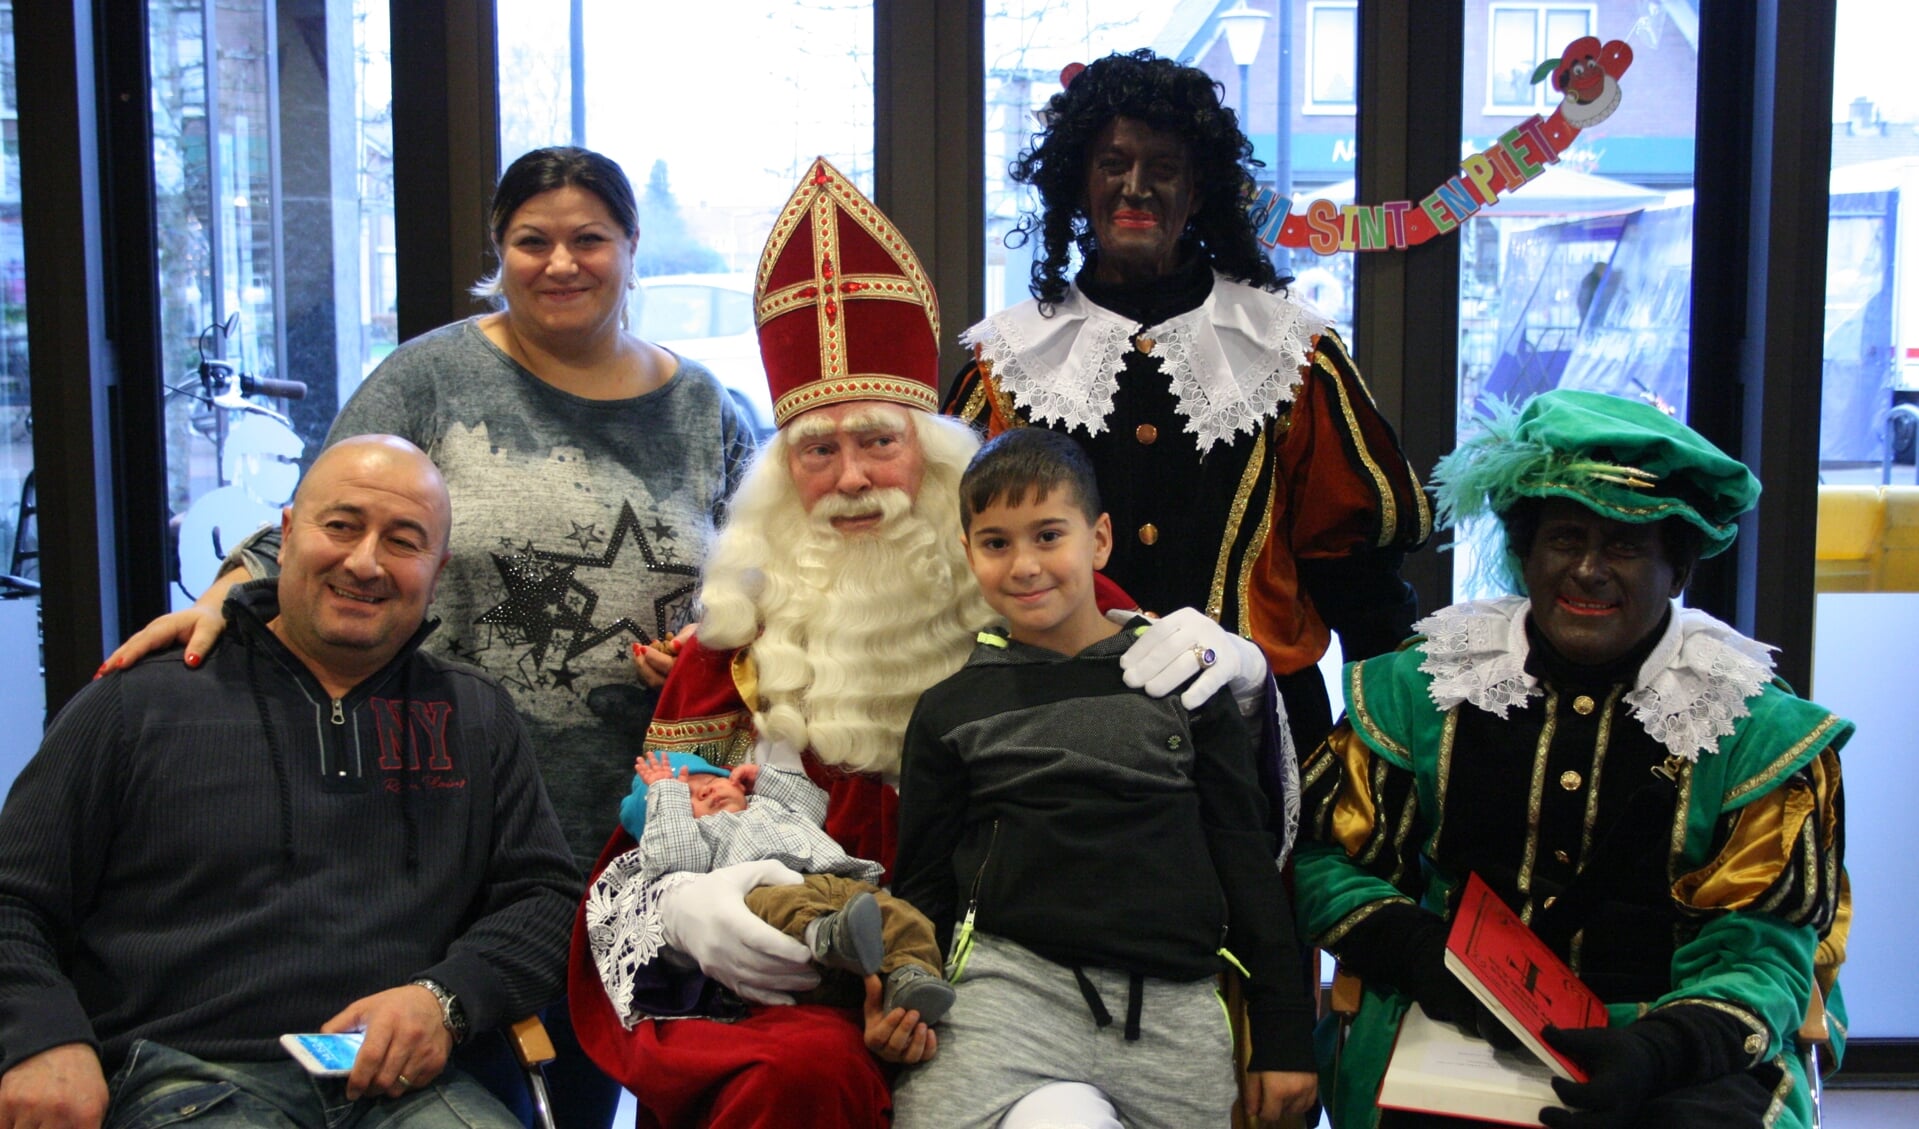 Sinterklaas met zwarte piet en een gelukkig gezin.